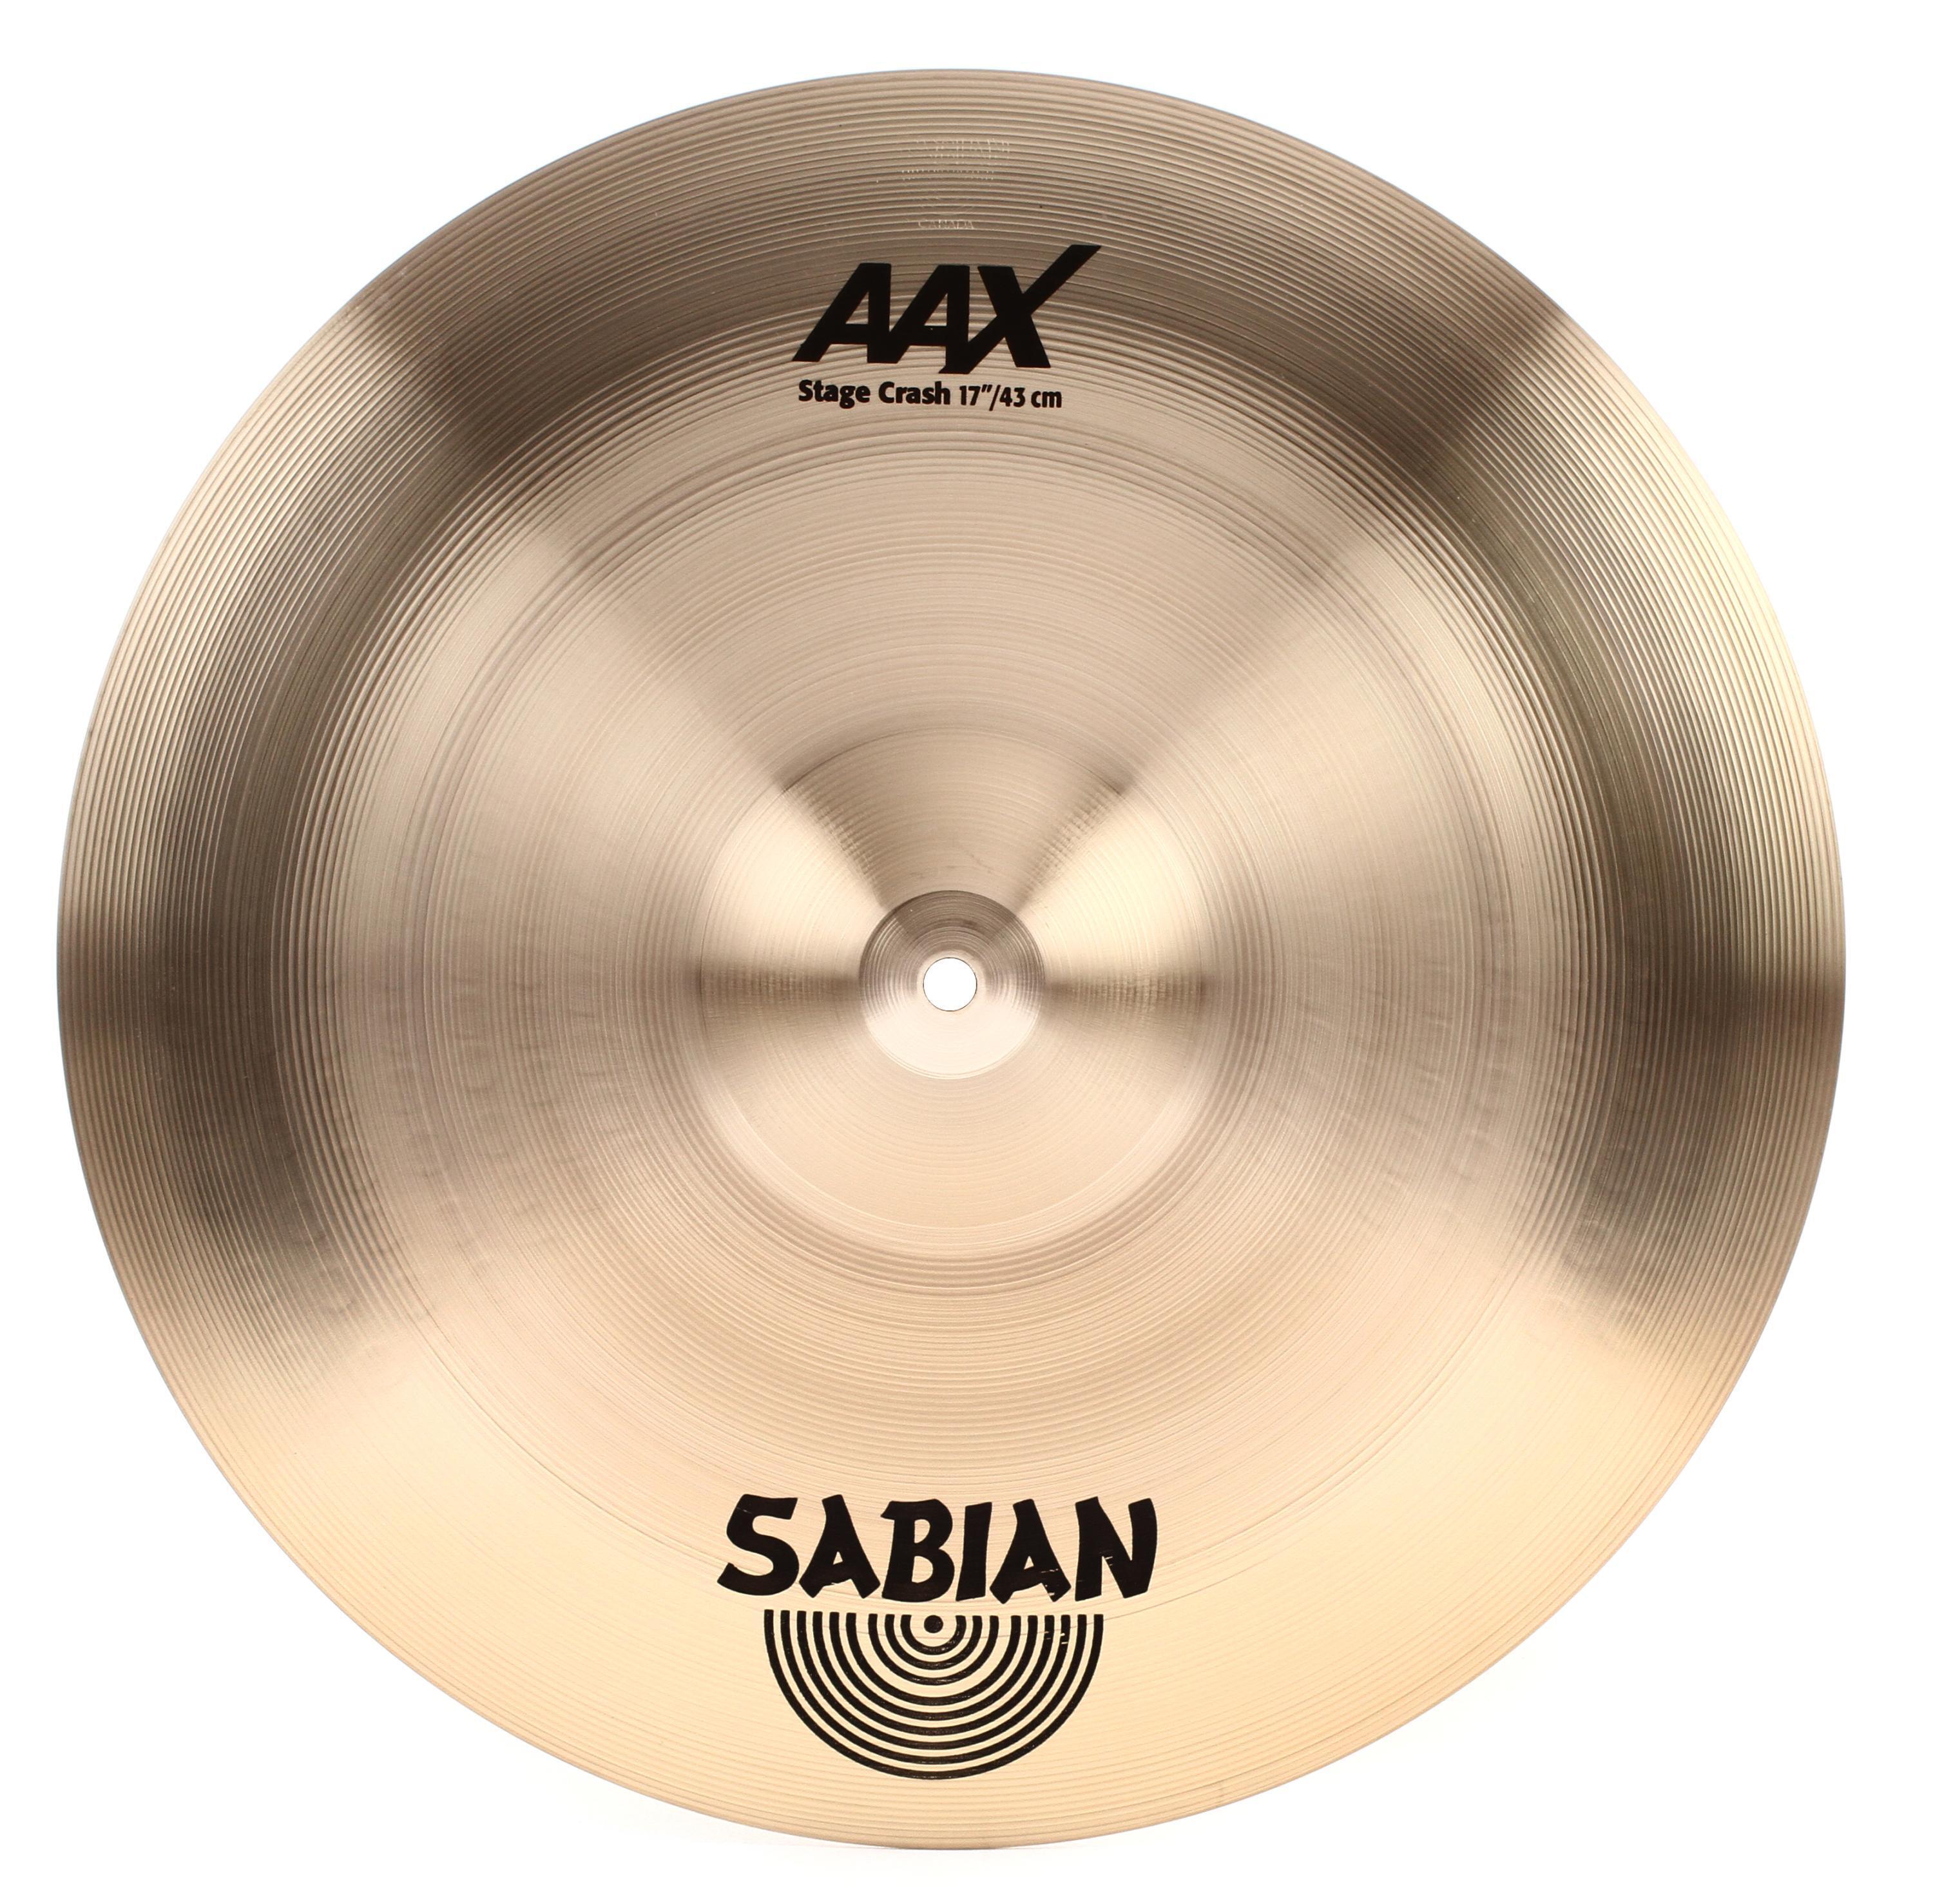 Sabian AAX Stage Crash Cymbal - 17